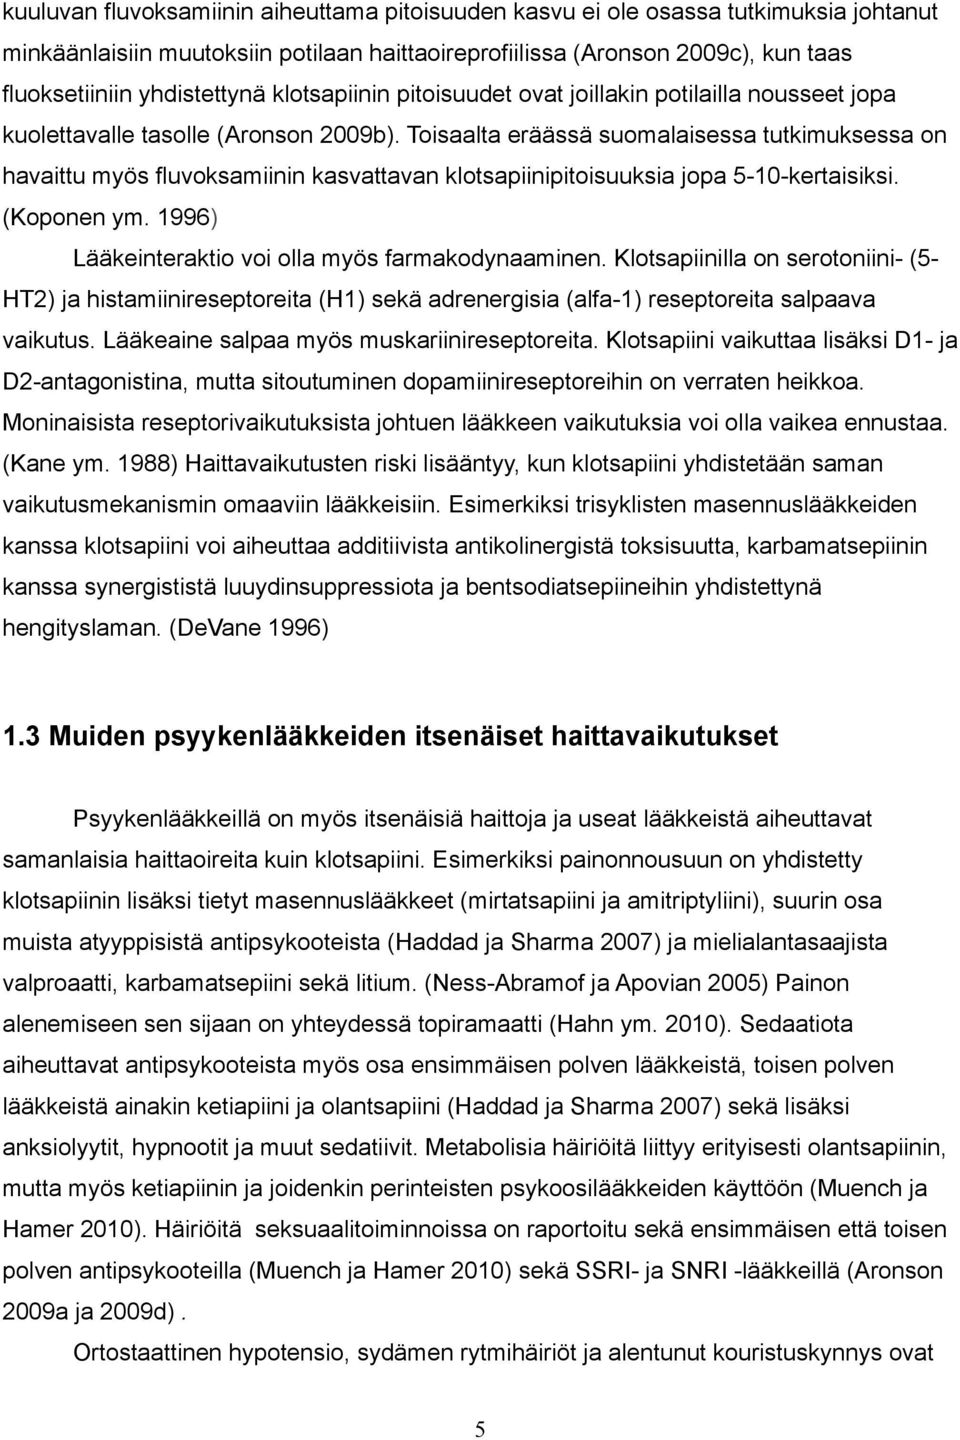 Toisaalta eräässä suomalaisessa tutkimuksessa on havaittu myös fluvoksamiinin kasvattavan klotsapiinipitoisuuksia jopa 5-10-kertaisiksi. (Koponen ym.